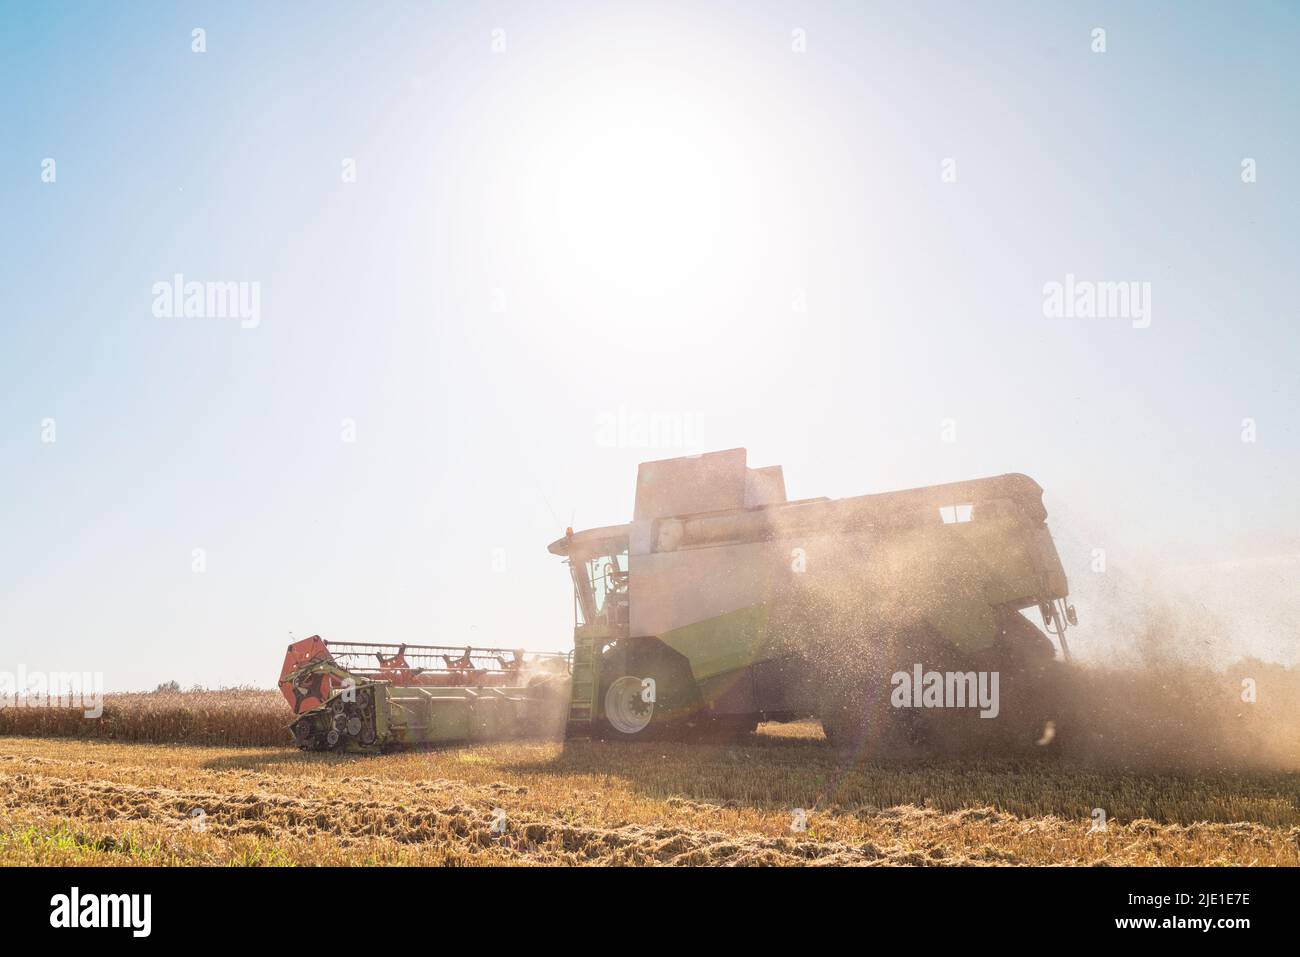 La moissonneuse-batteuse enlève le blé mûr. Travail agricole, récolte du grain dans le champ. Banque D'Images